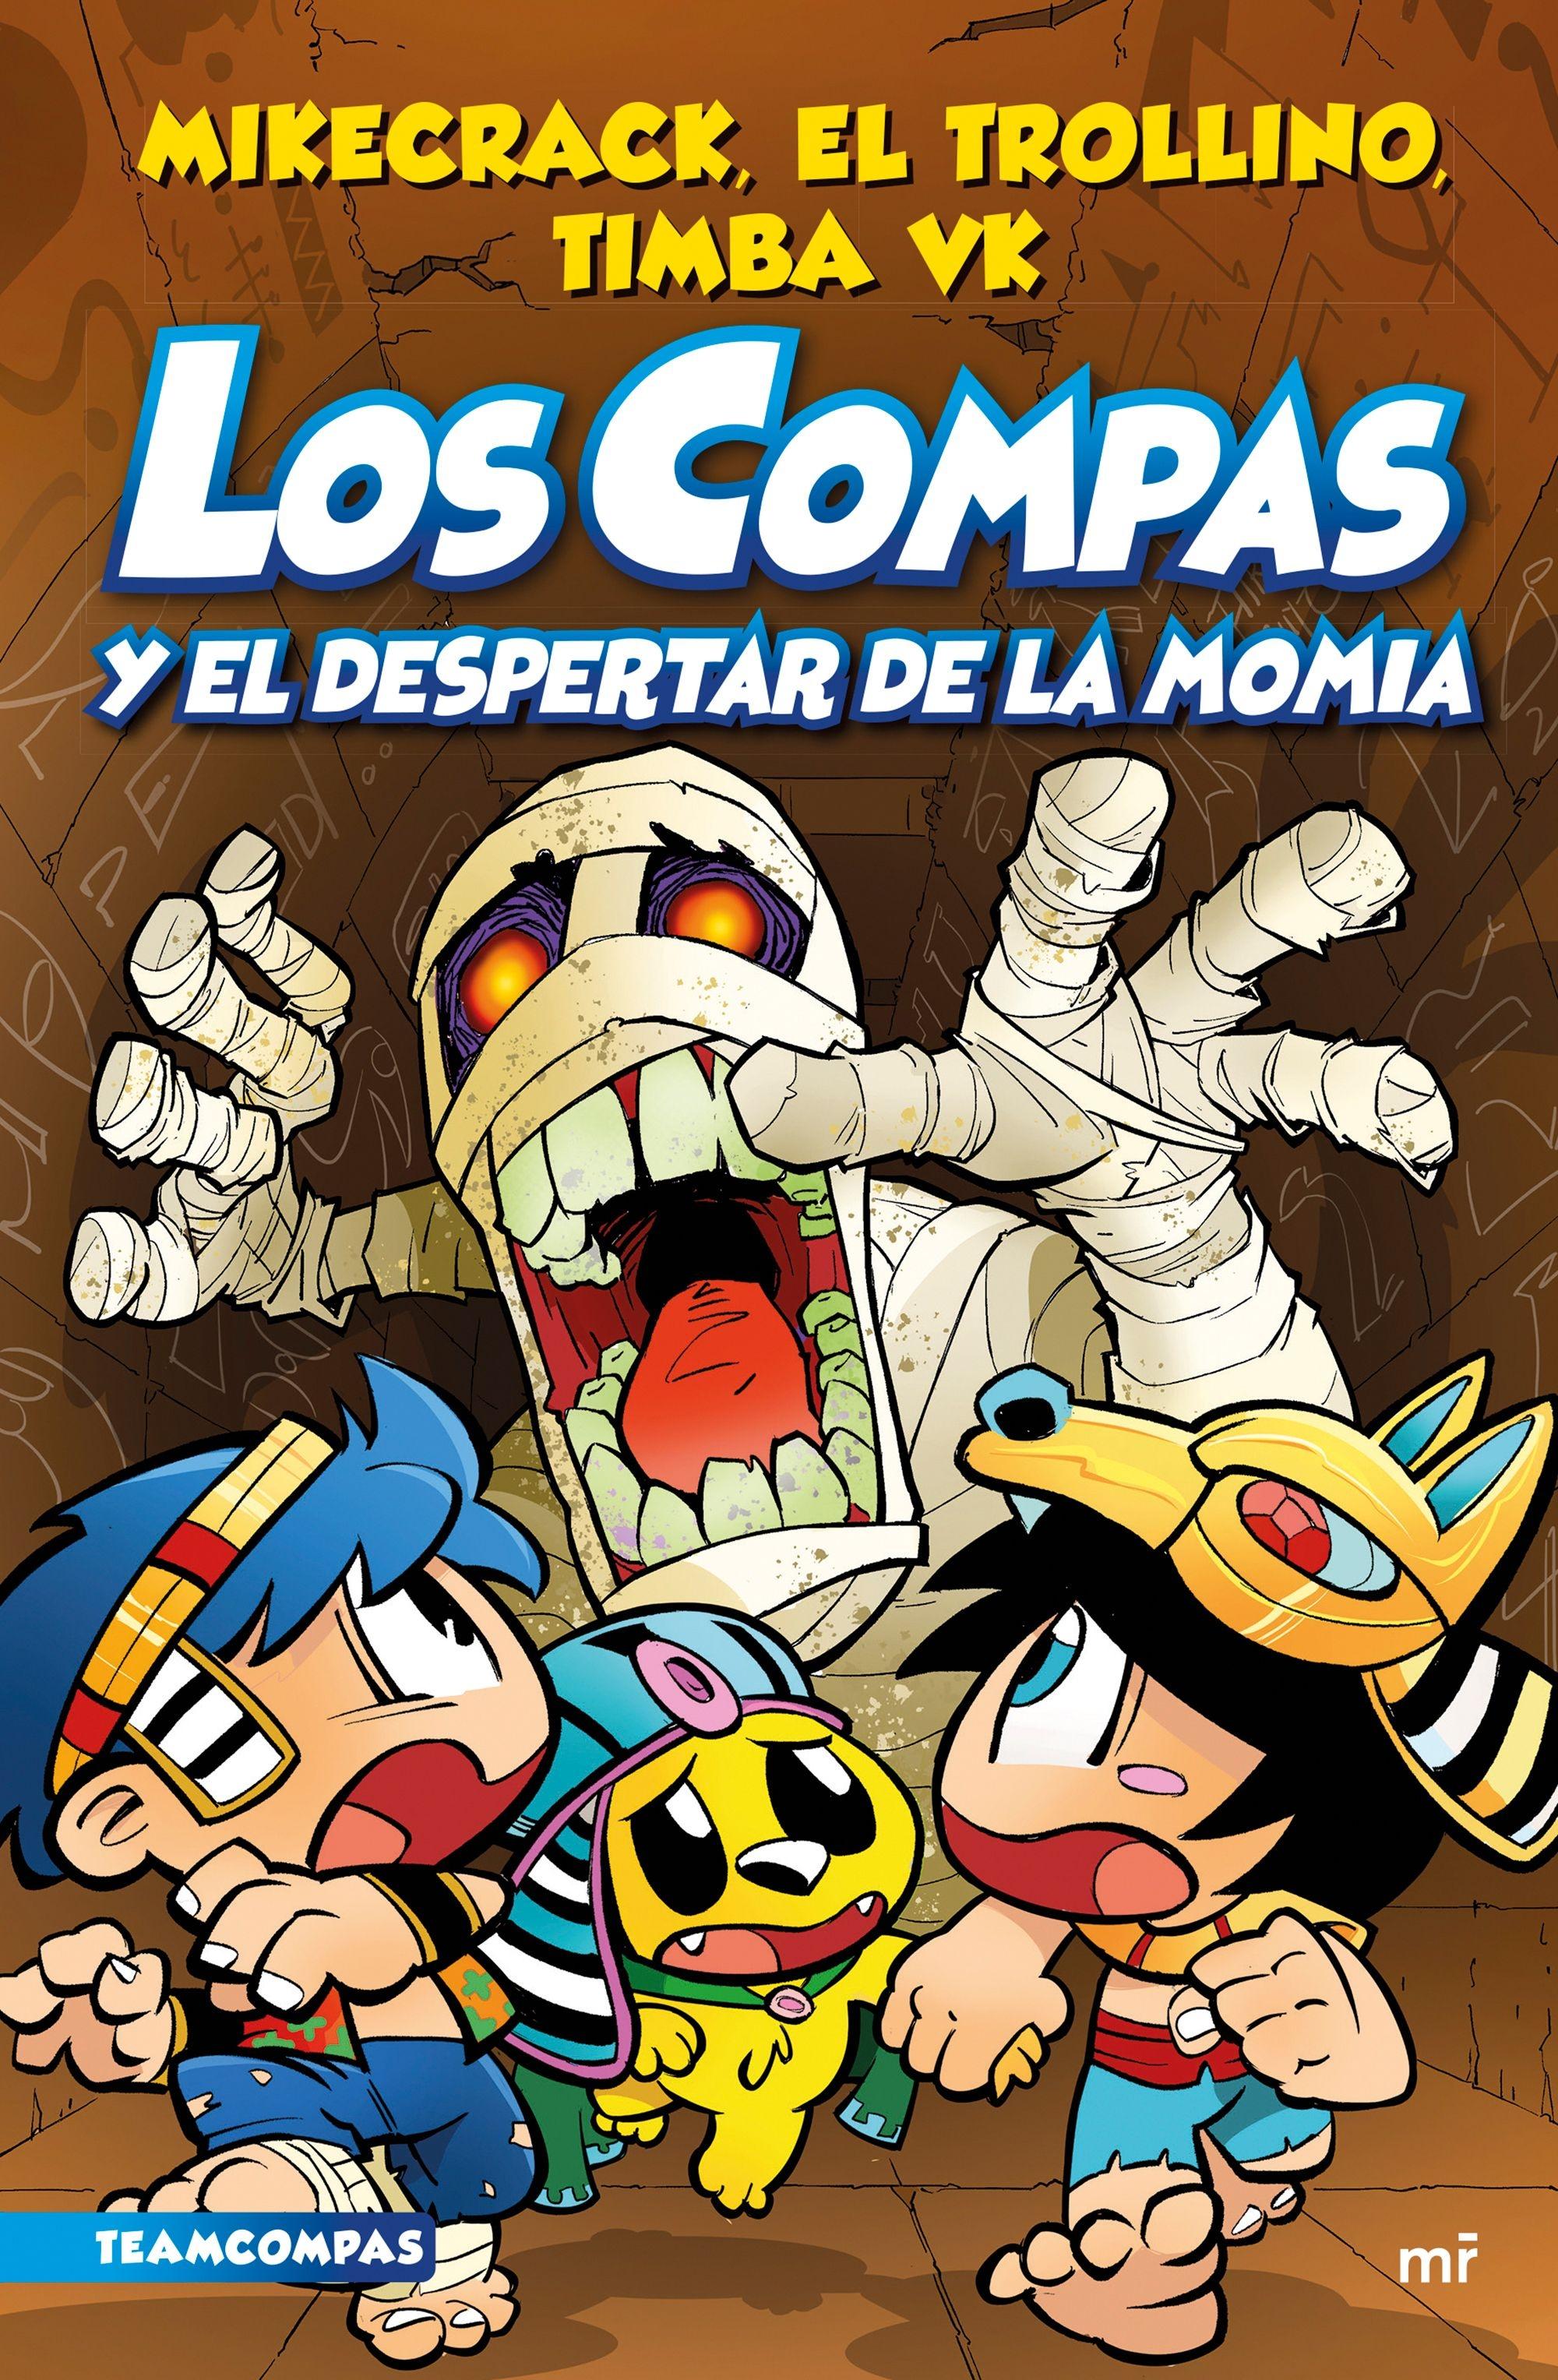 Los Compas 9 "Los Compas y el despertar de la momia". 